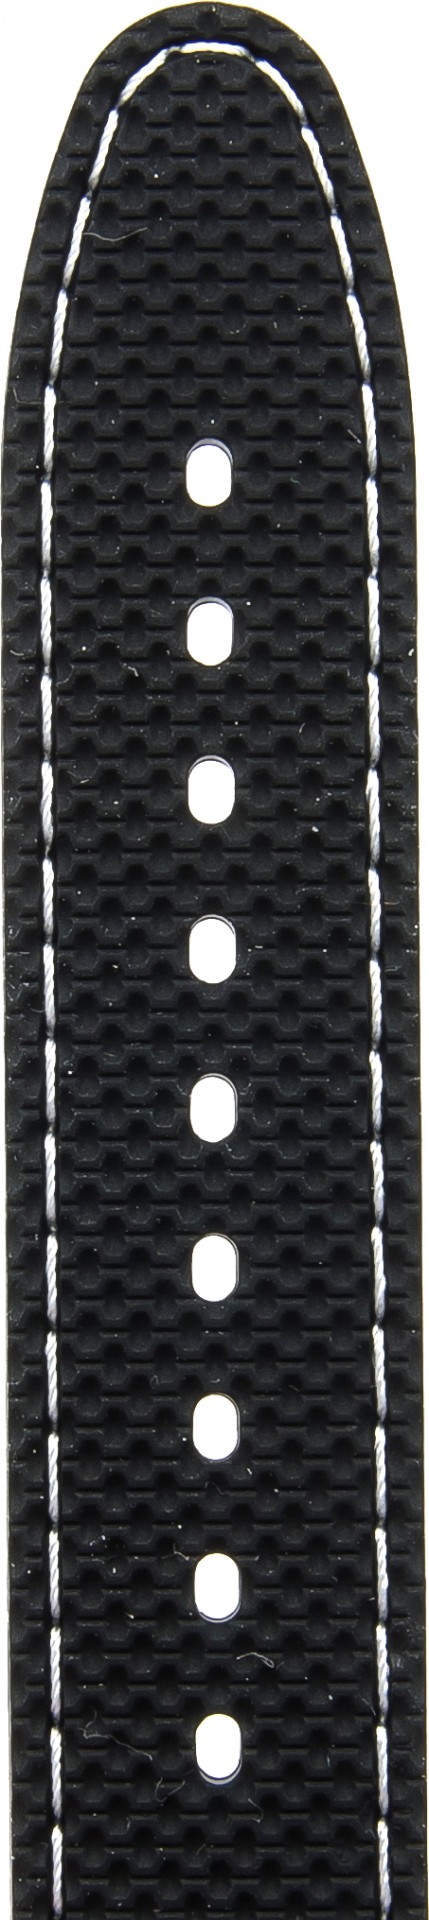   Watch Band Reifen-Muster Dornschließe - Silikon - schwarz with weiße stitching 